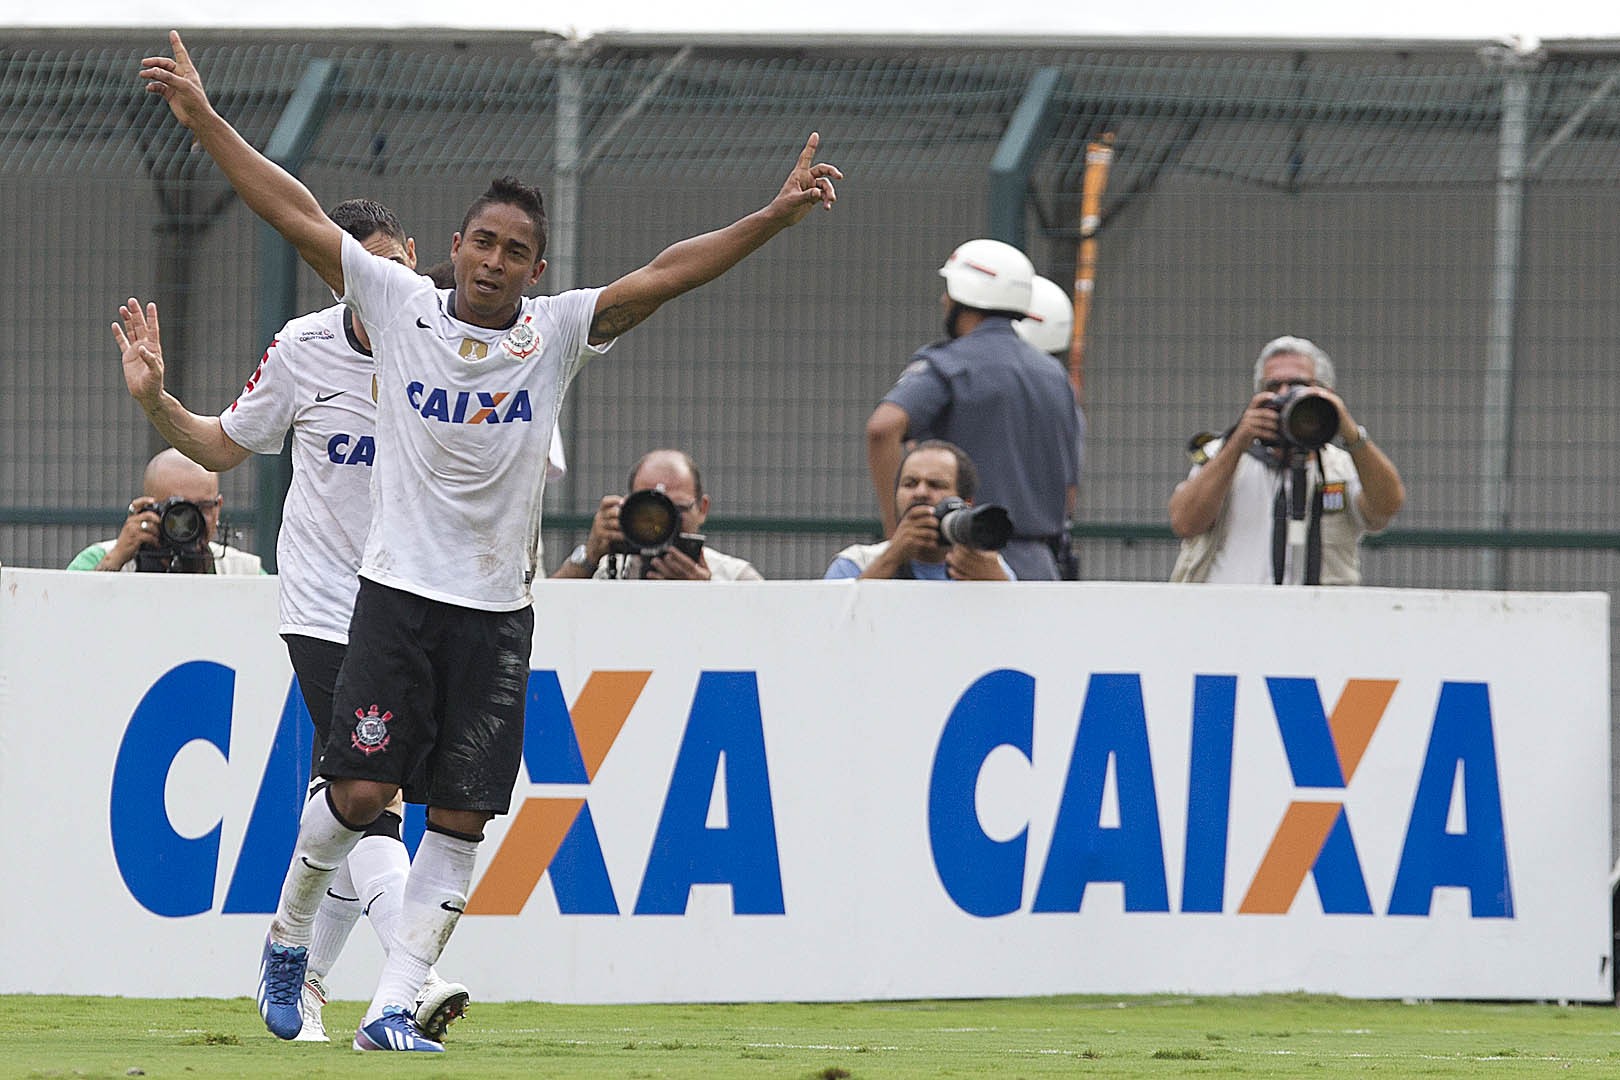 Também com 21 assistências, Jorge Henrique fecha o top 15. O atacante atuou no Corinthians entre 2009 e 2013.